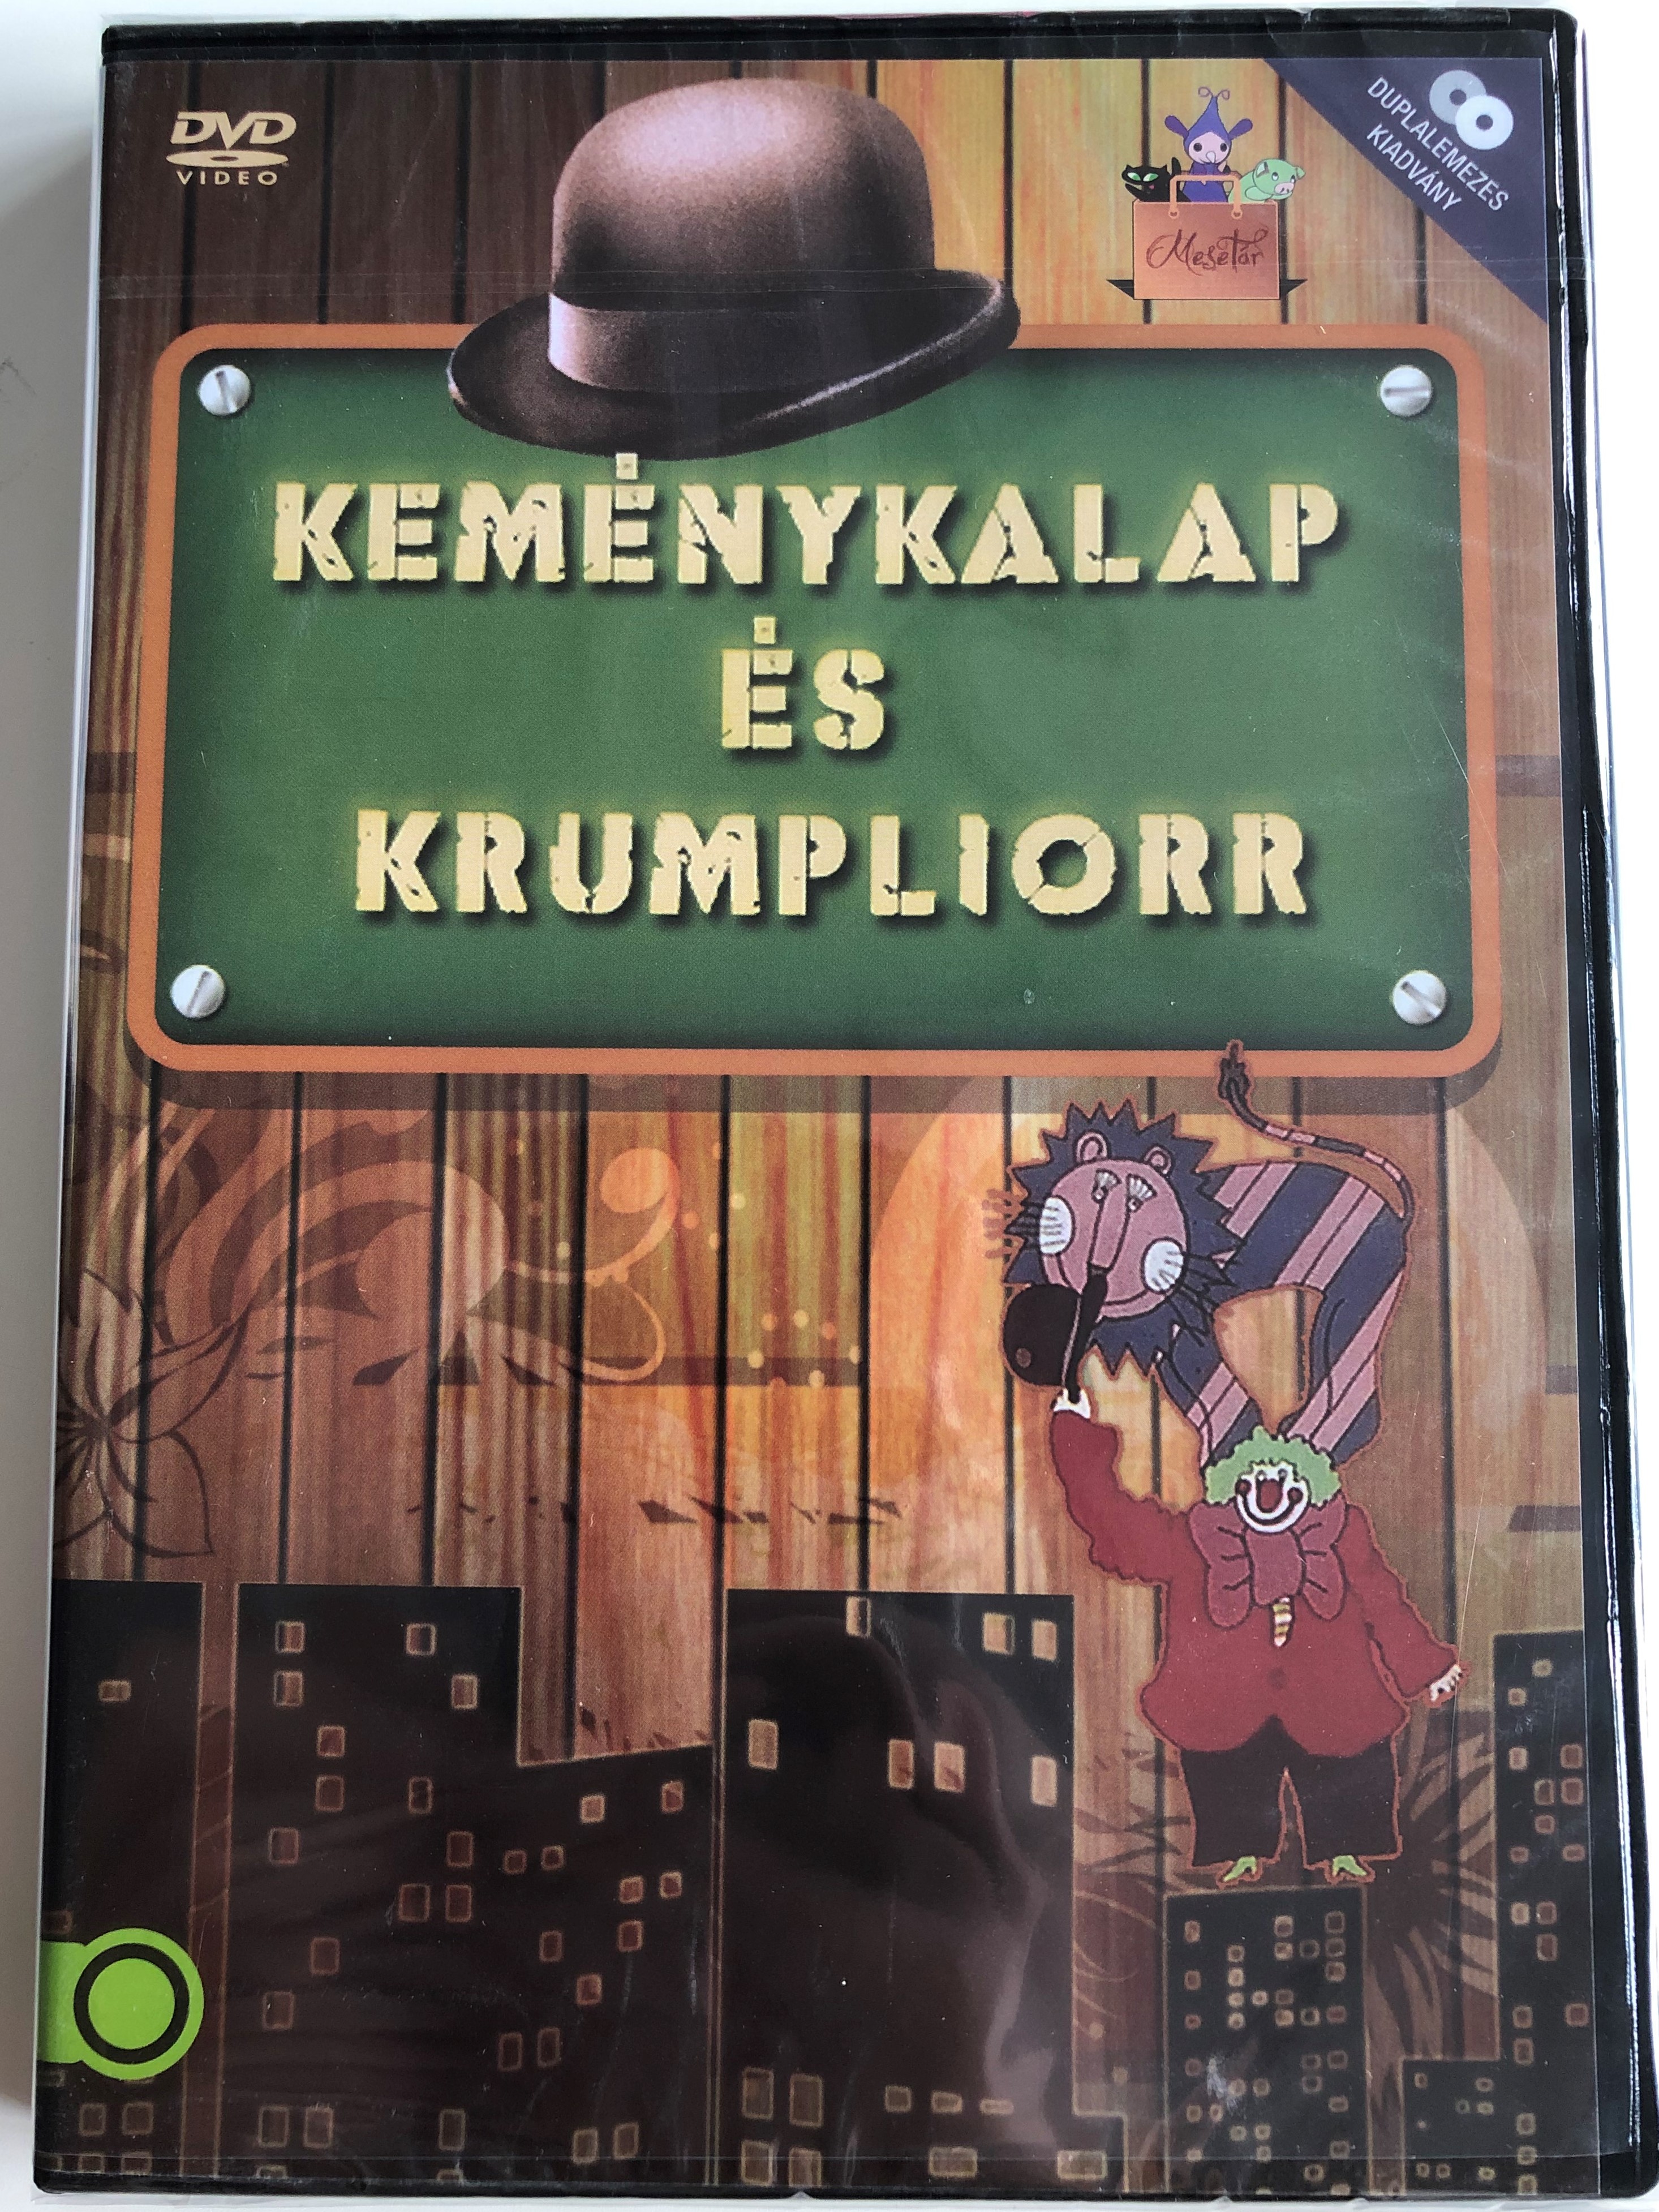 kem-nykalap-s-krumpliorr-2dvd-1974-directed-by-b-cskai-laur-istv-n-1.jpg